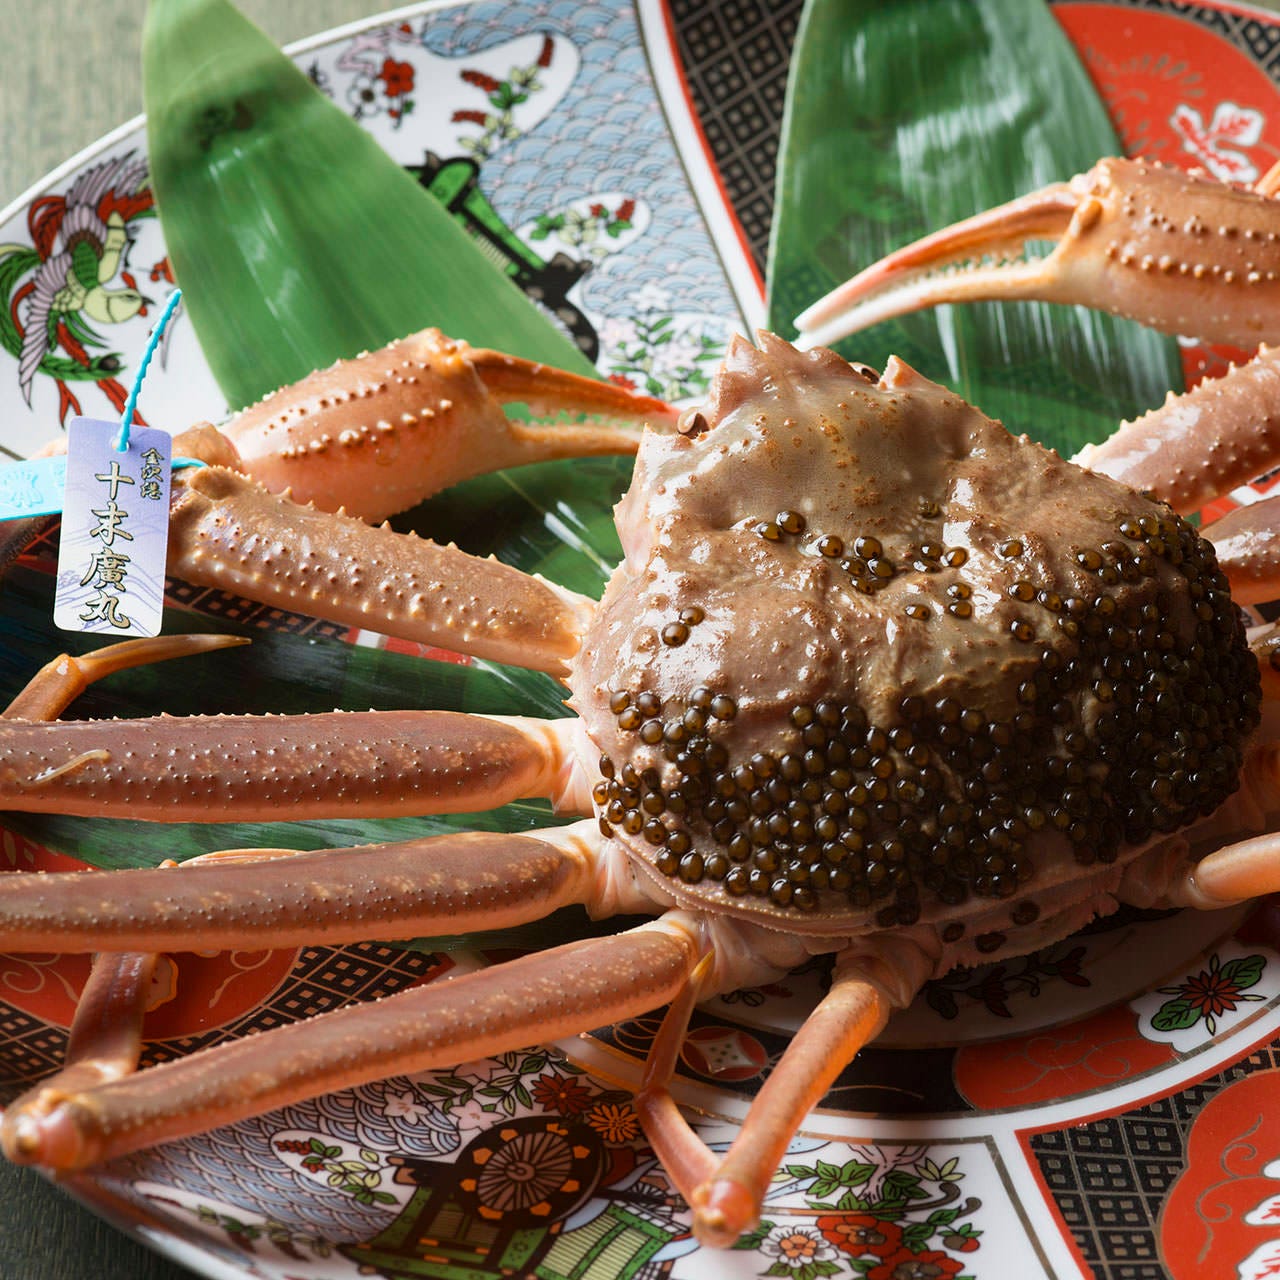 金沢港から直送される旨みの詰まった『加能蟹・黄金蟹』を堪能